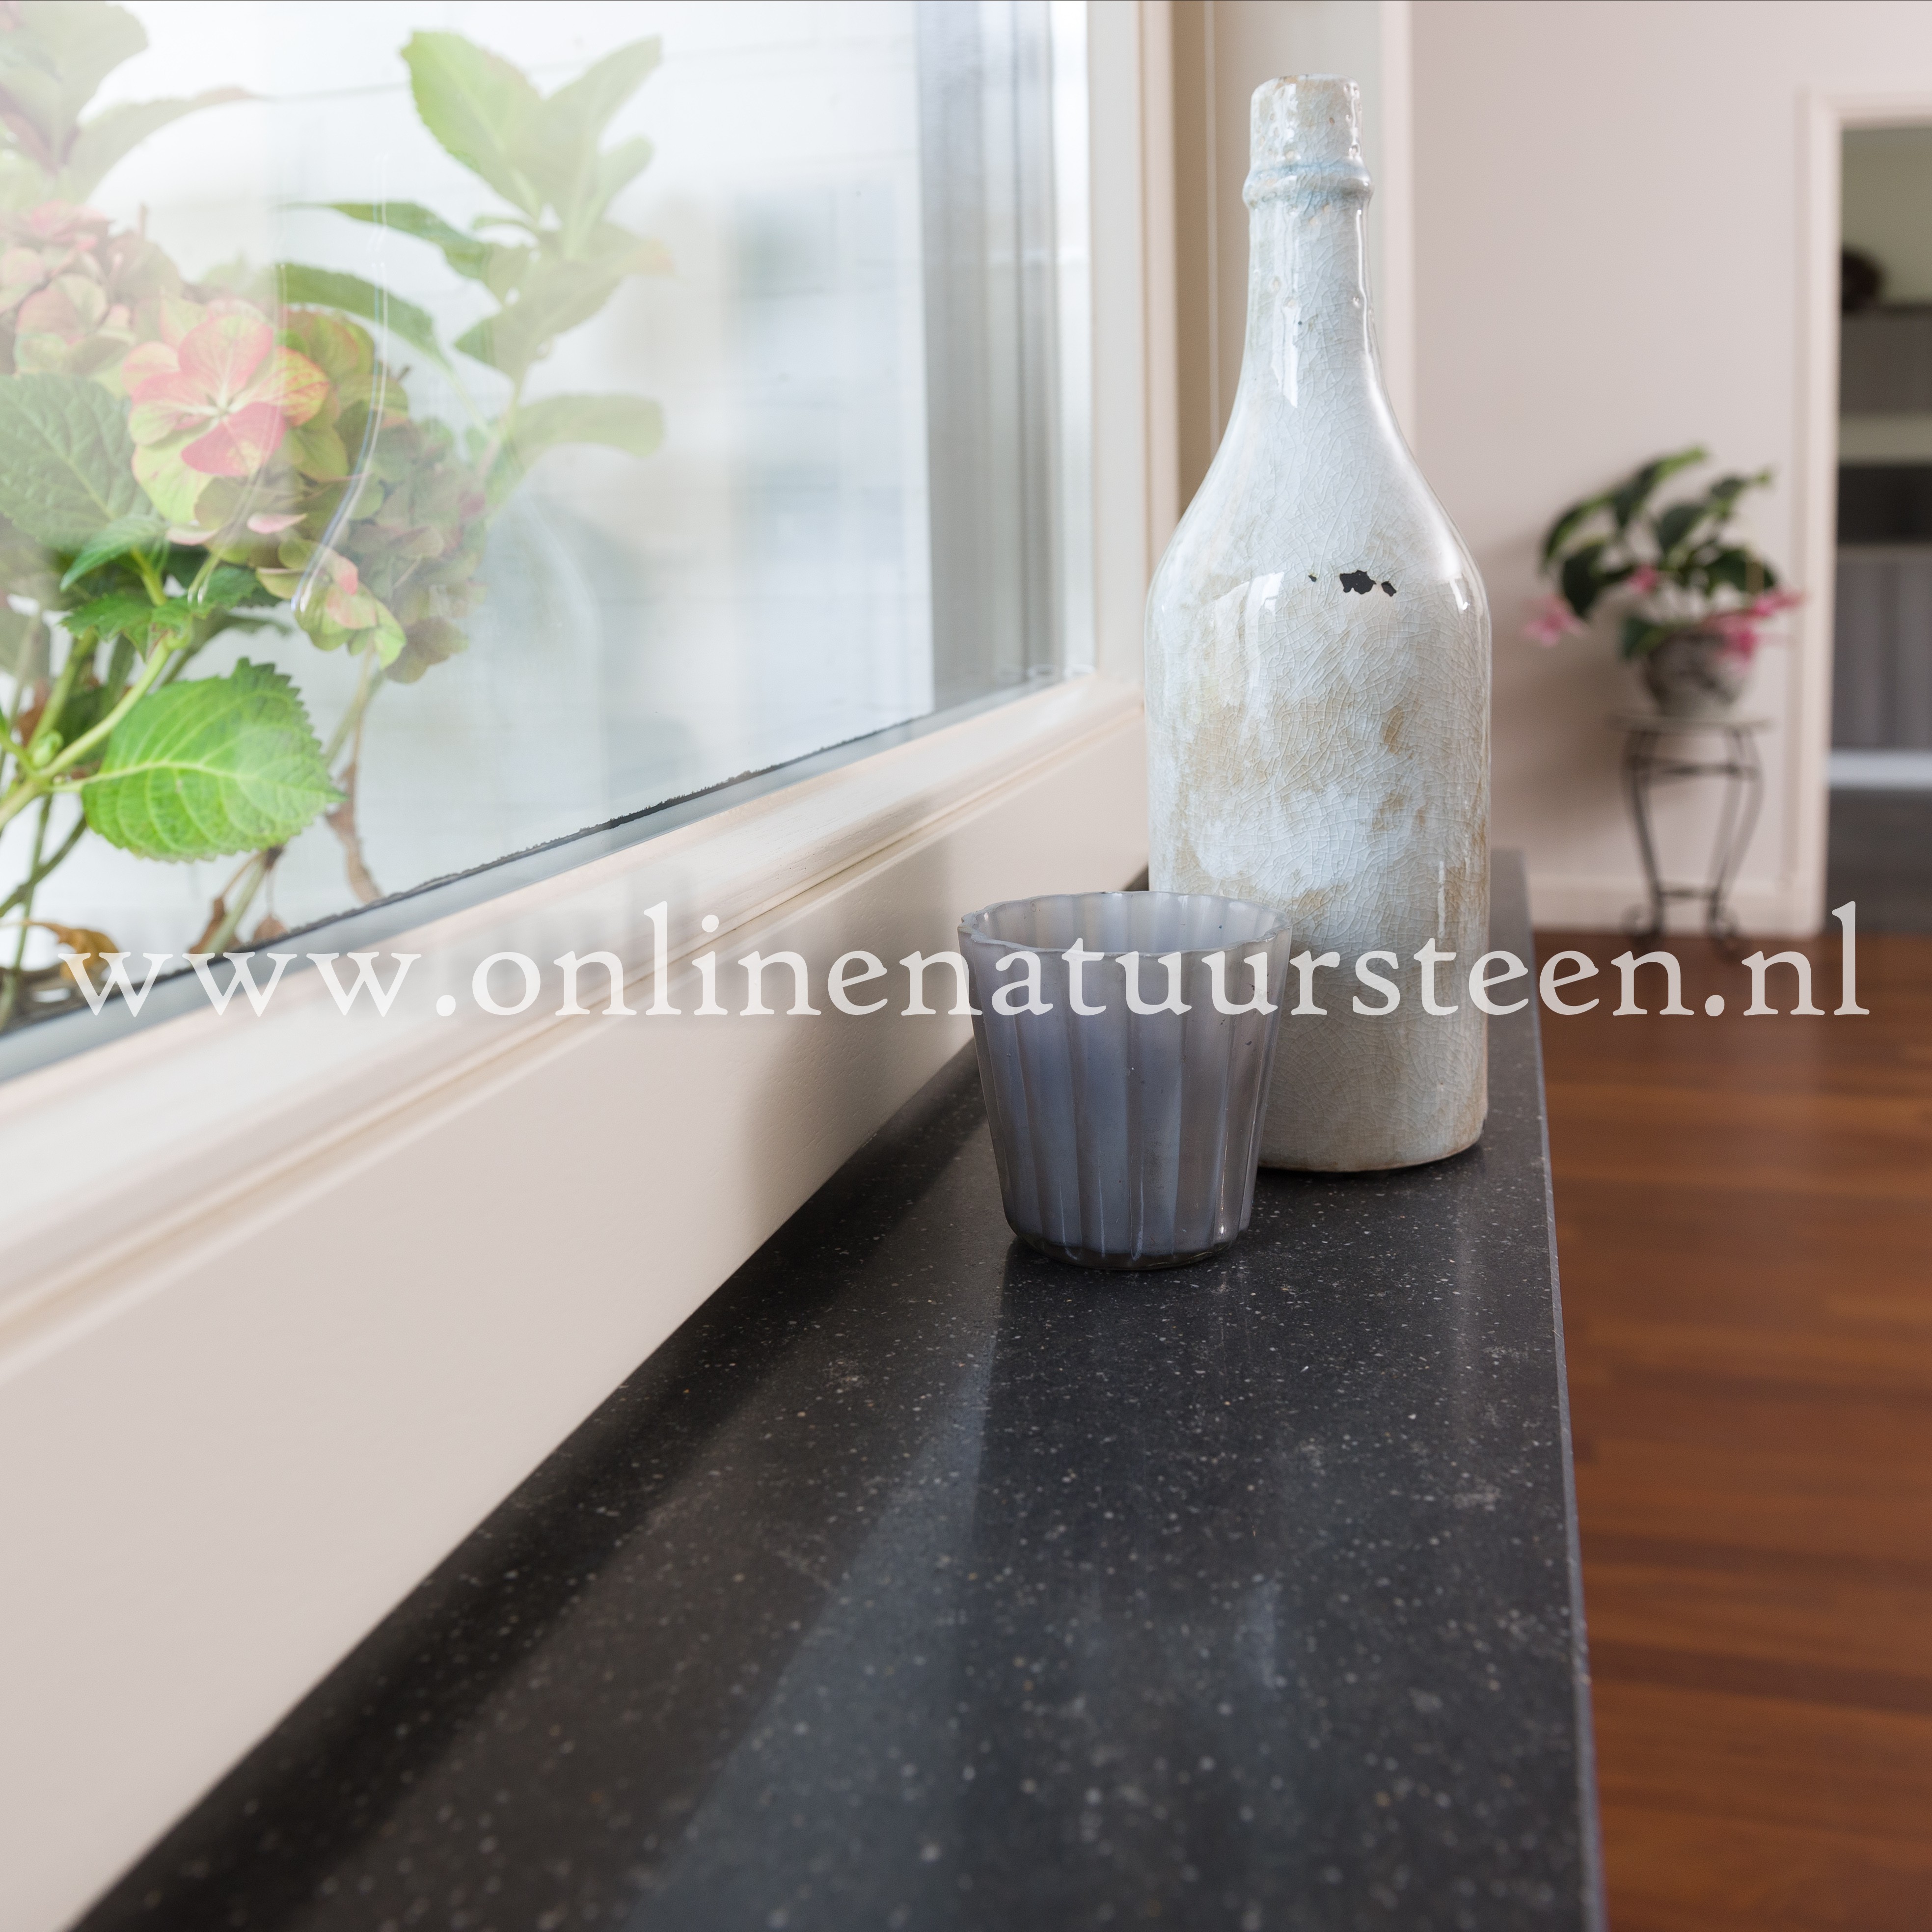 Gaan wandelen Buurt Toestand Online Natuursteen | | Marmercomposiet Hardsteen MI (Belgisch hardsteen  look) (30 cm. breed) - 2 cm.